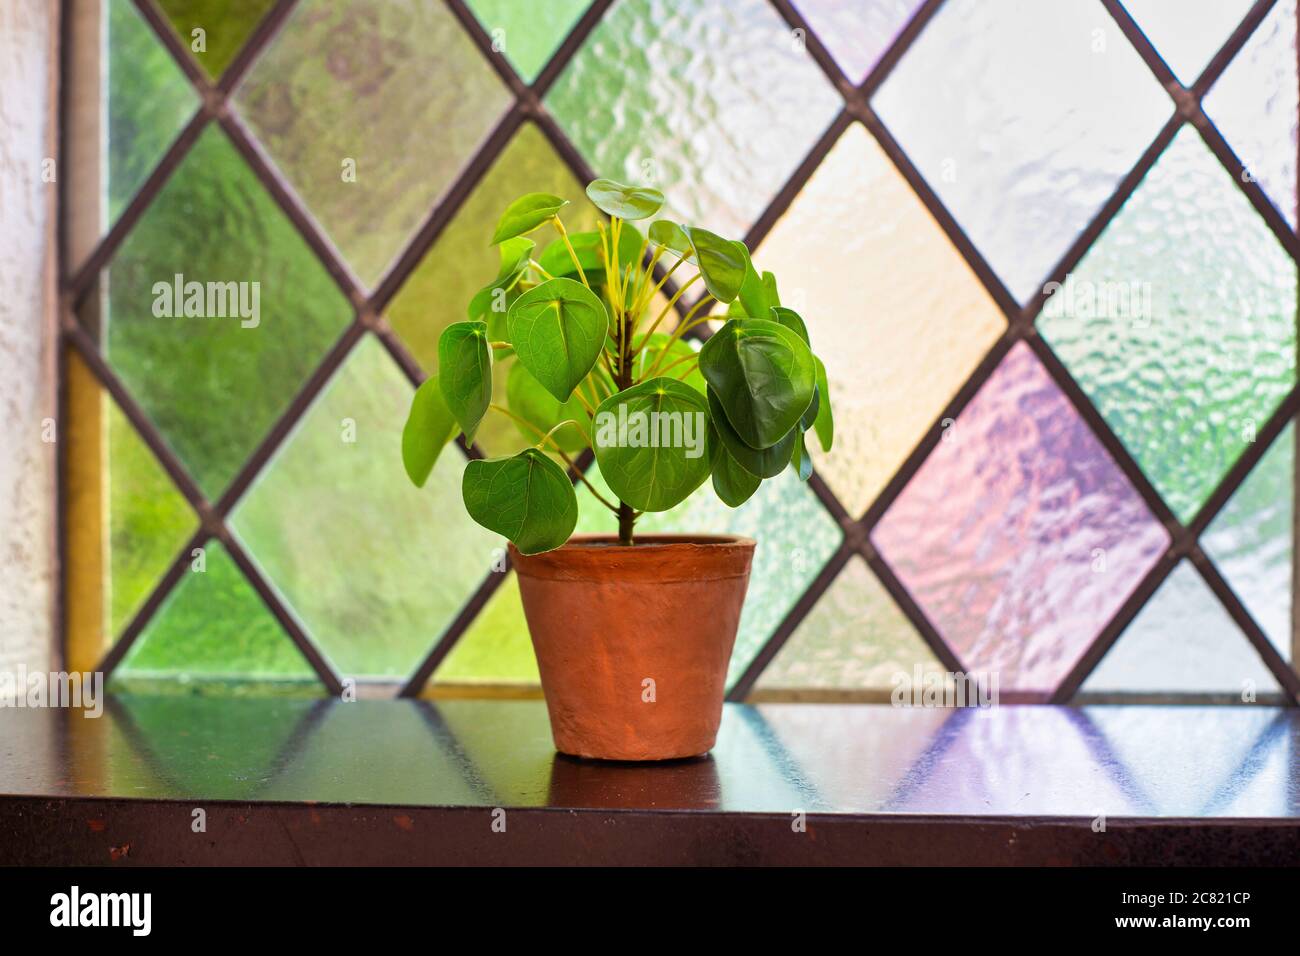 Pilea peperomioides, money pianta o pancake pianta Casa moderna interno su davanzale, finestra con vetro colorato, design retrò Foto Stock